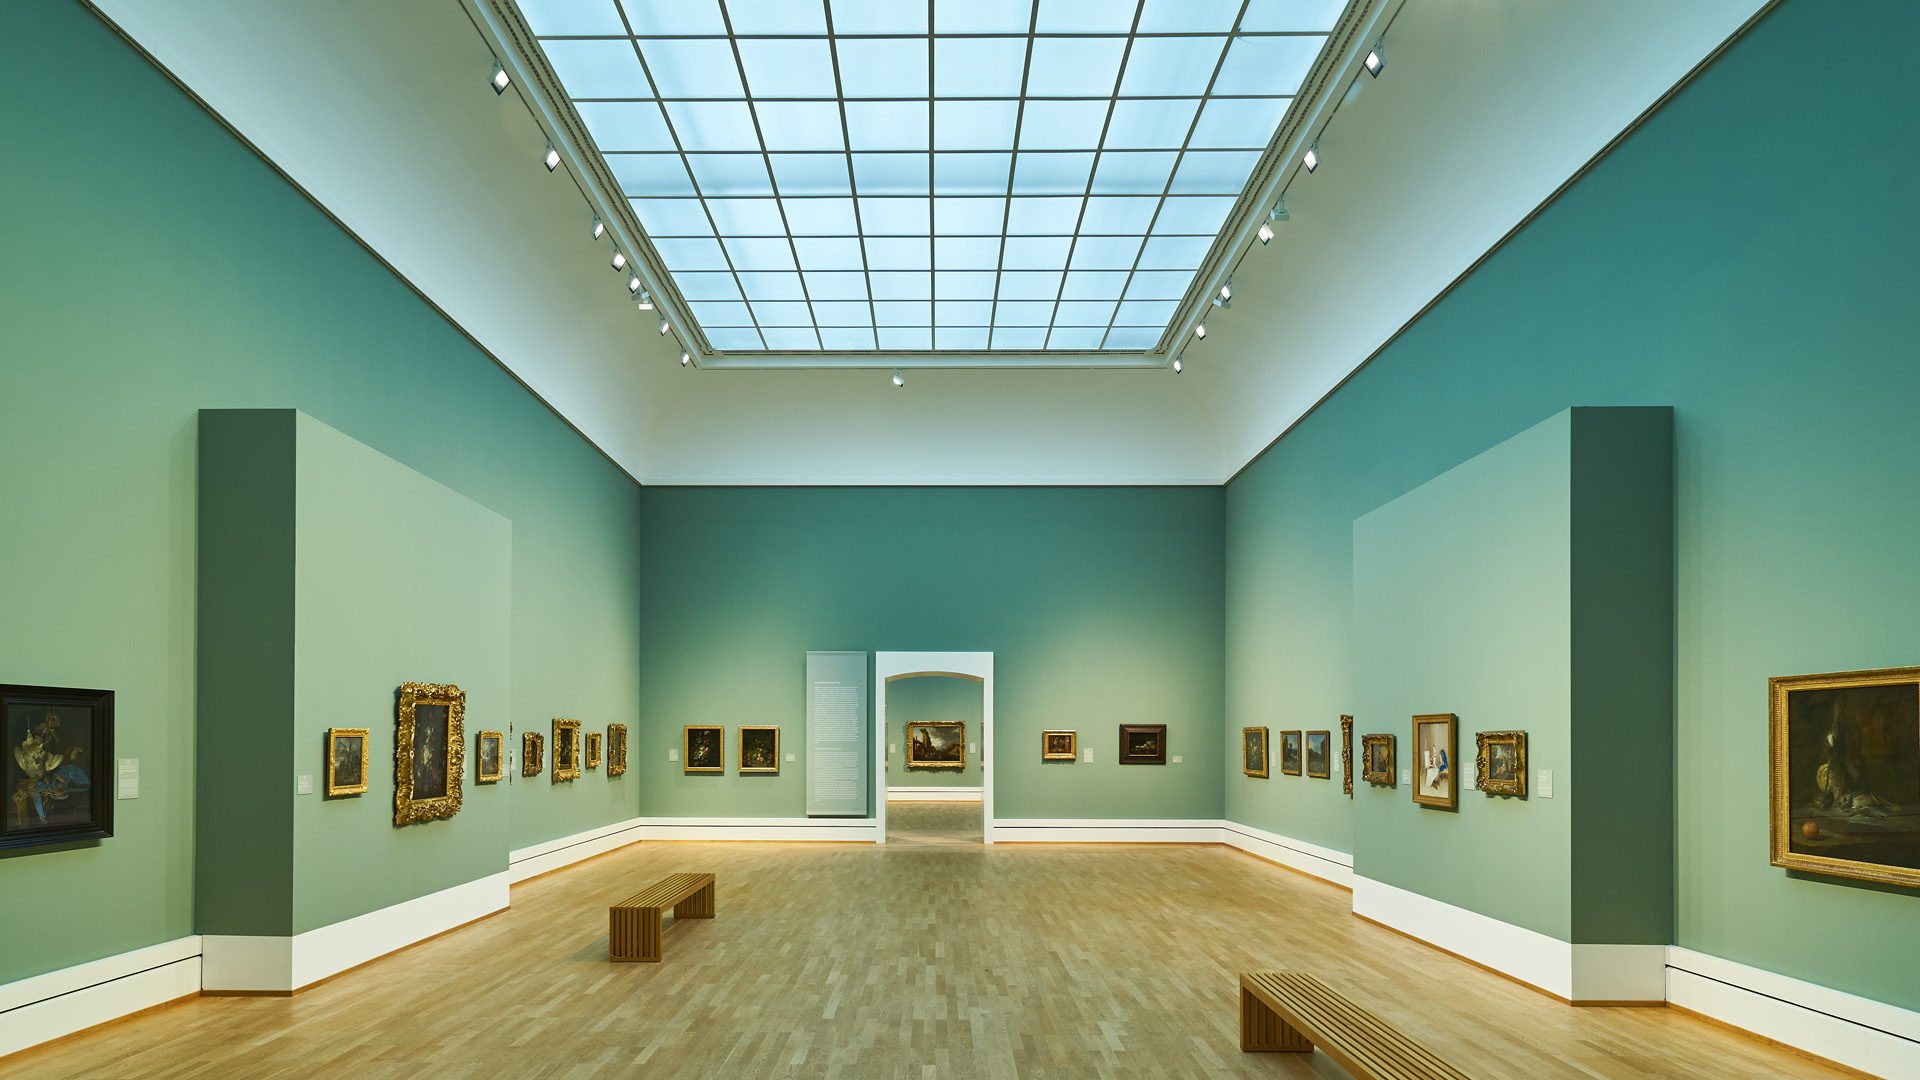 Blick in die Säle der Sammlung der Kunsthalle Karlsruhe. Die Wände sind hellgrün und an den Wänden hängen Gemälde